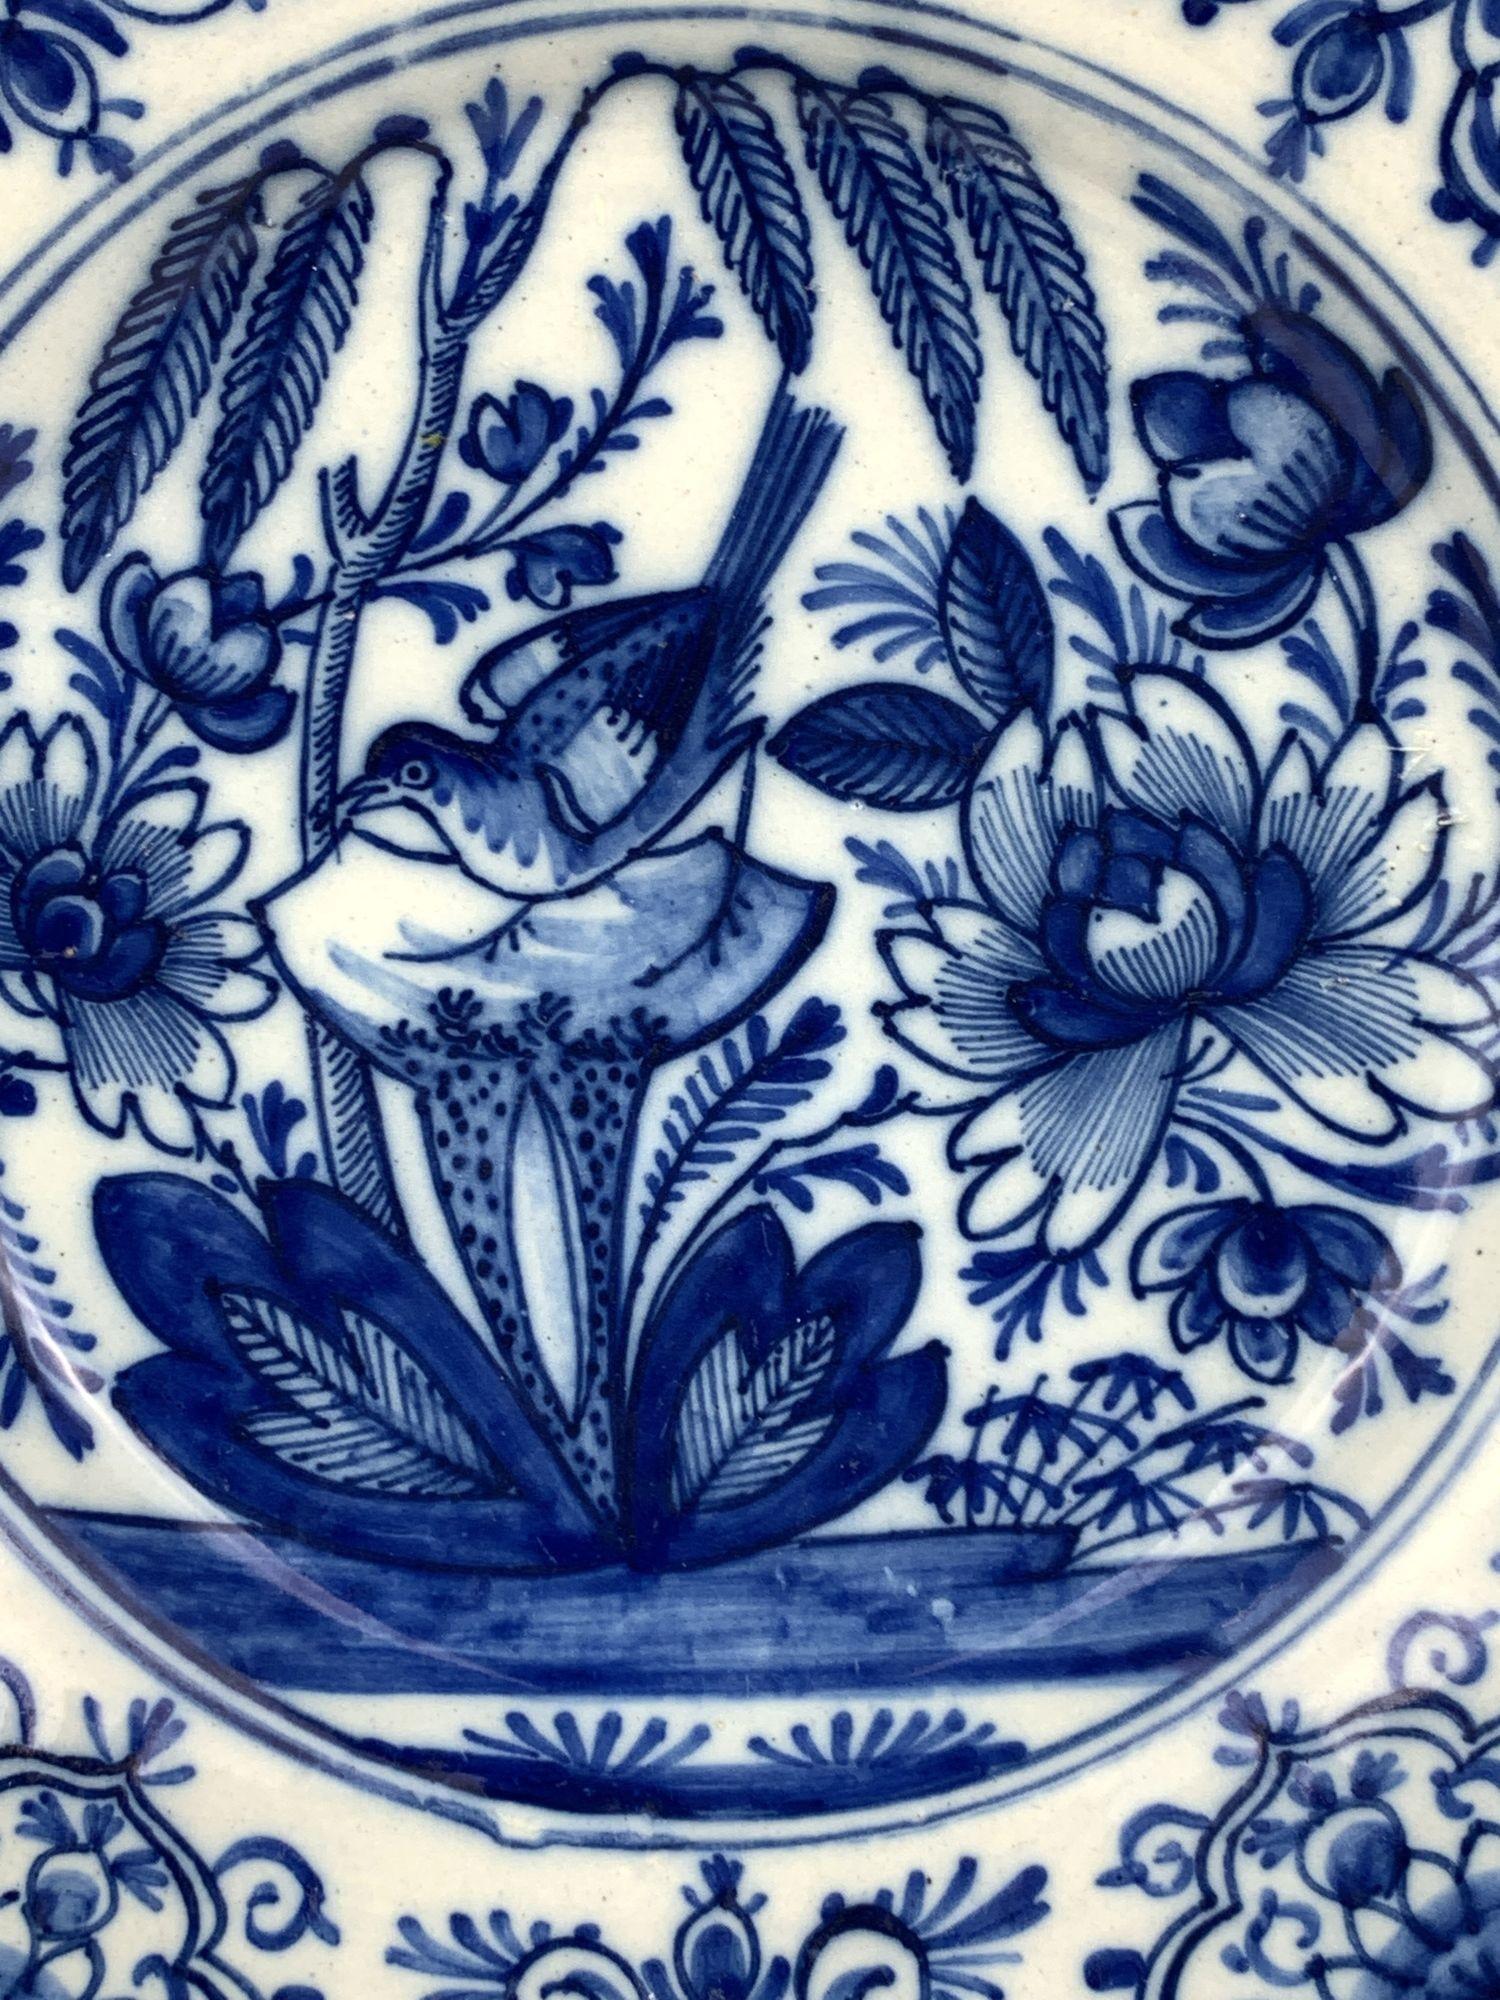 Diese Delfter Schale ist von Hand in einem wunderschönen, intensiven Kobaltblau bemalt. 
Das Zentrum zeigt einen schönen Garten mit einem Singvogel inmitten blühender Blumen und einem Weidenbaum, dessen Äste über den Garten drapiert sind.
Der Rand